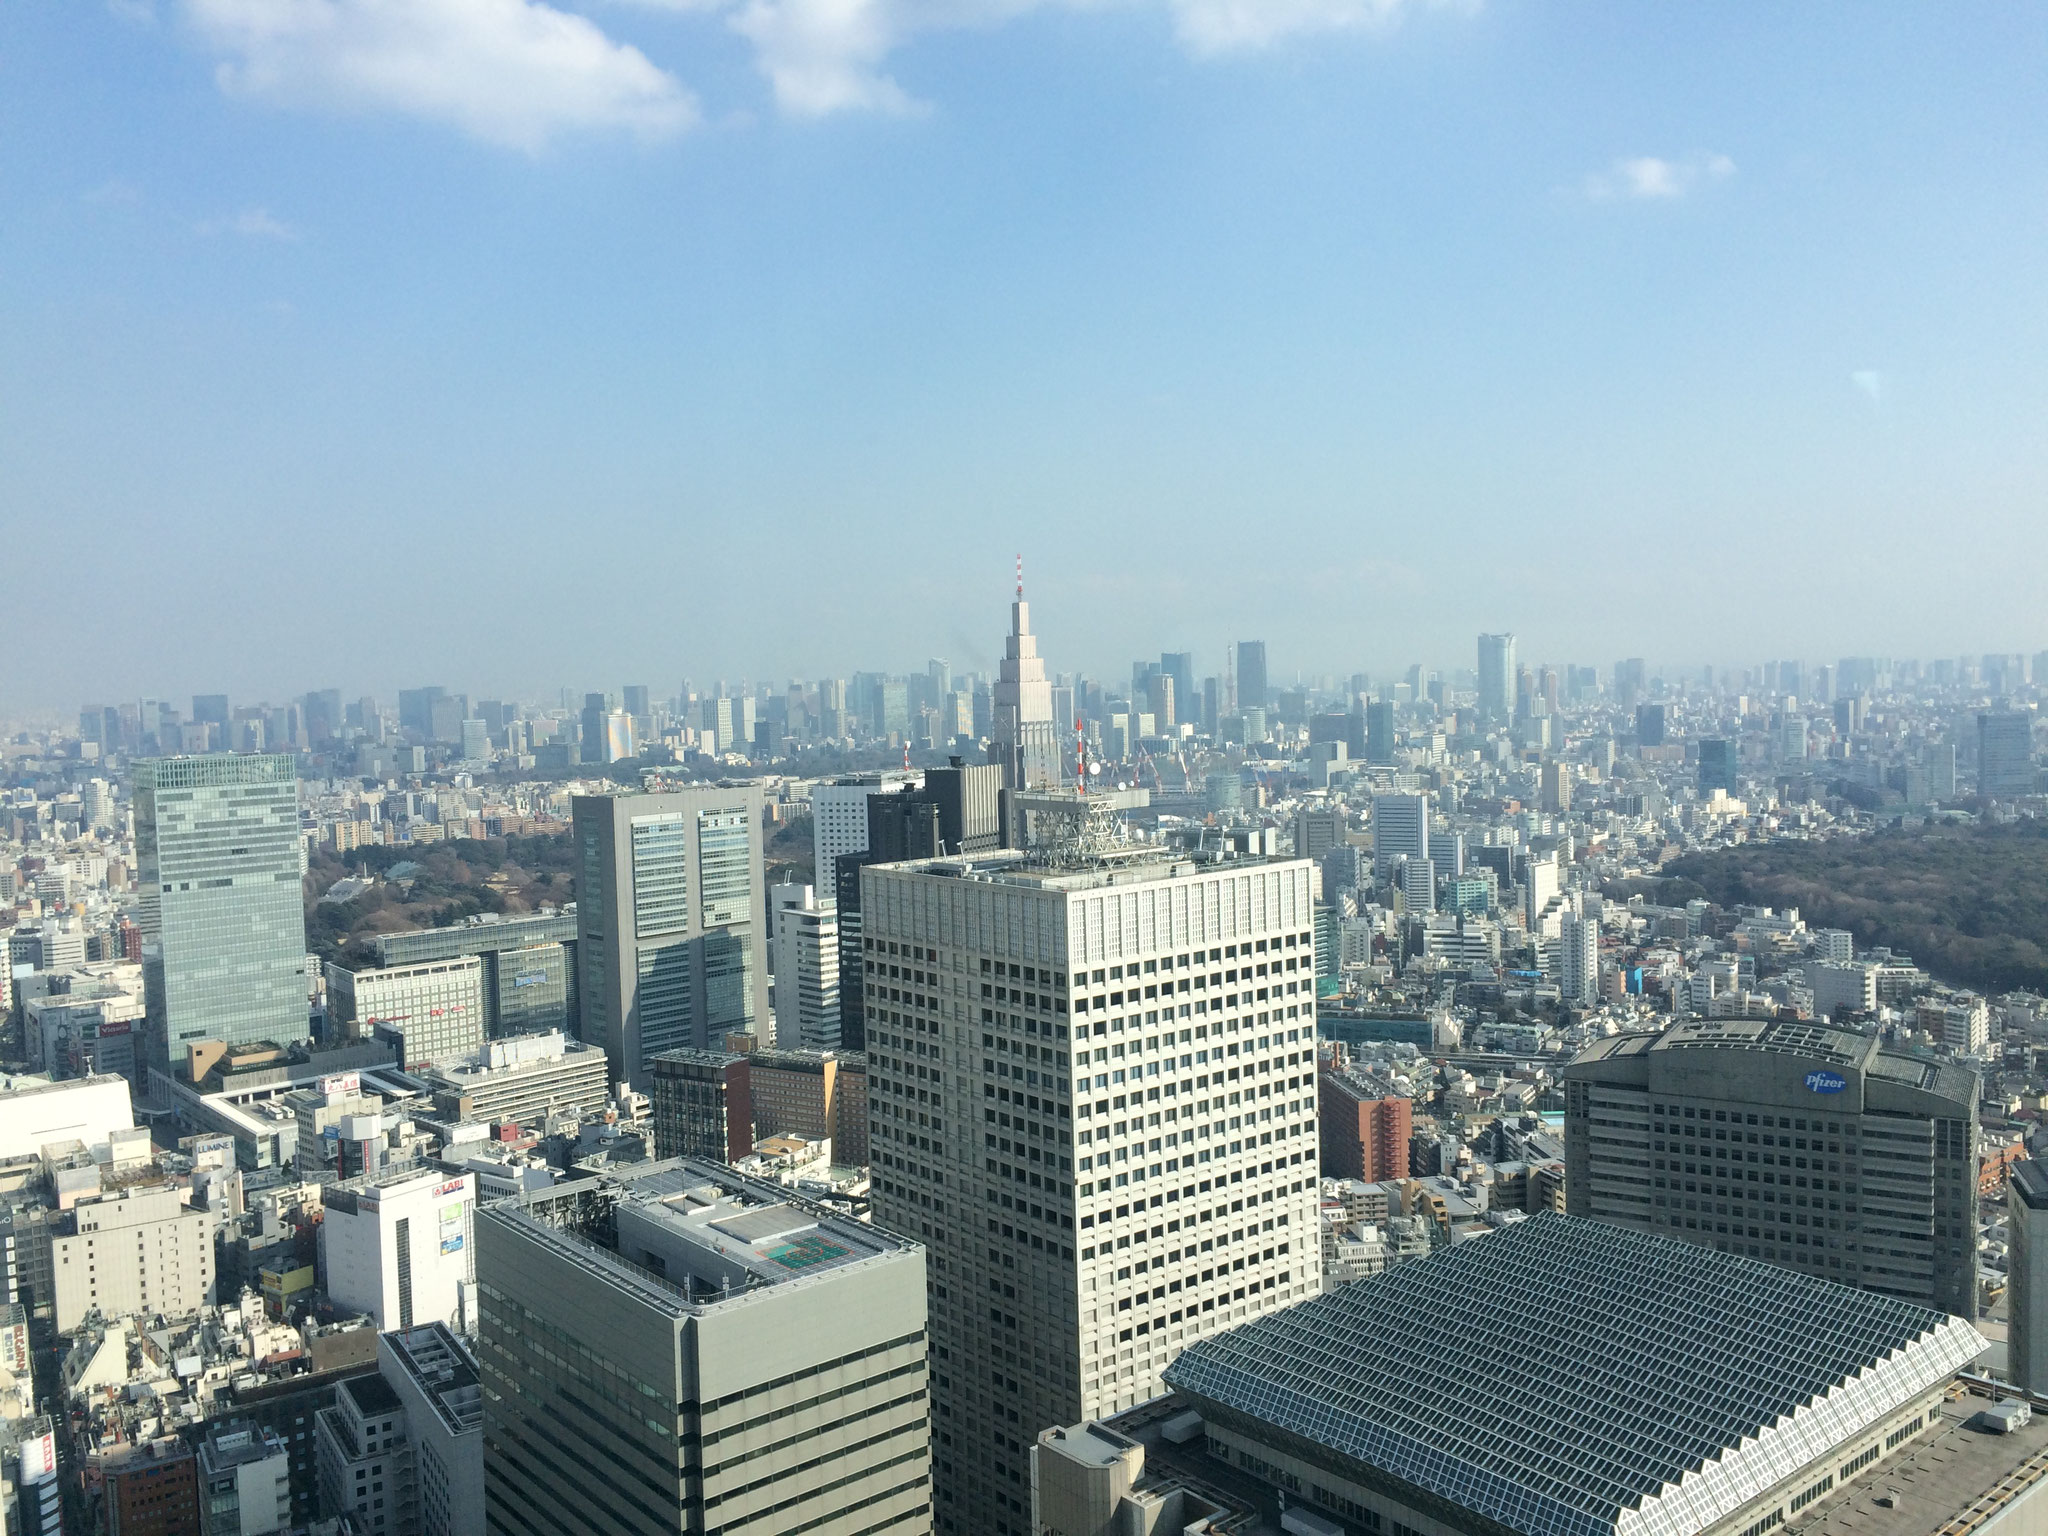 Tokios Skyline - leider nicht so spektakulär wie in Shanghai... 